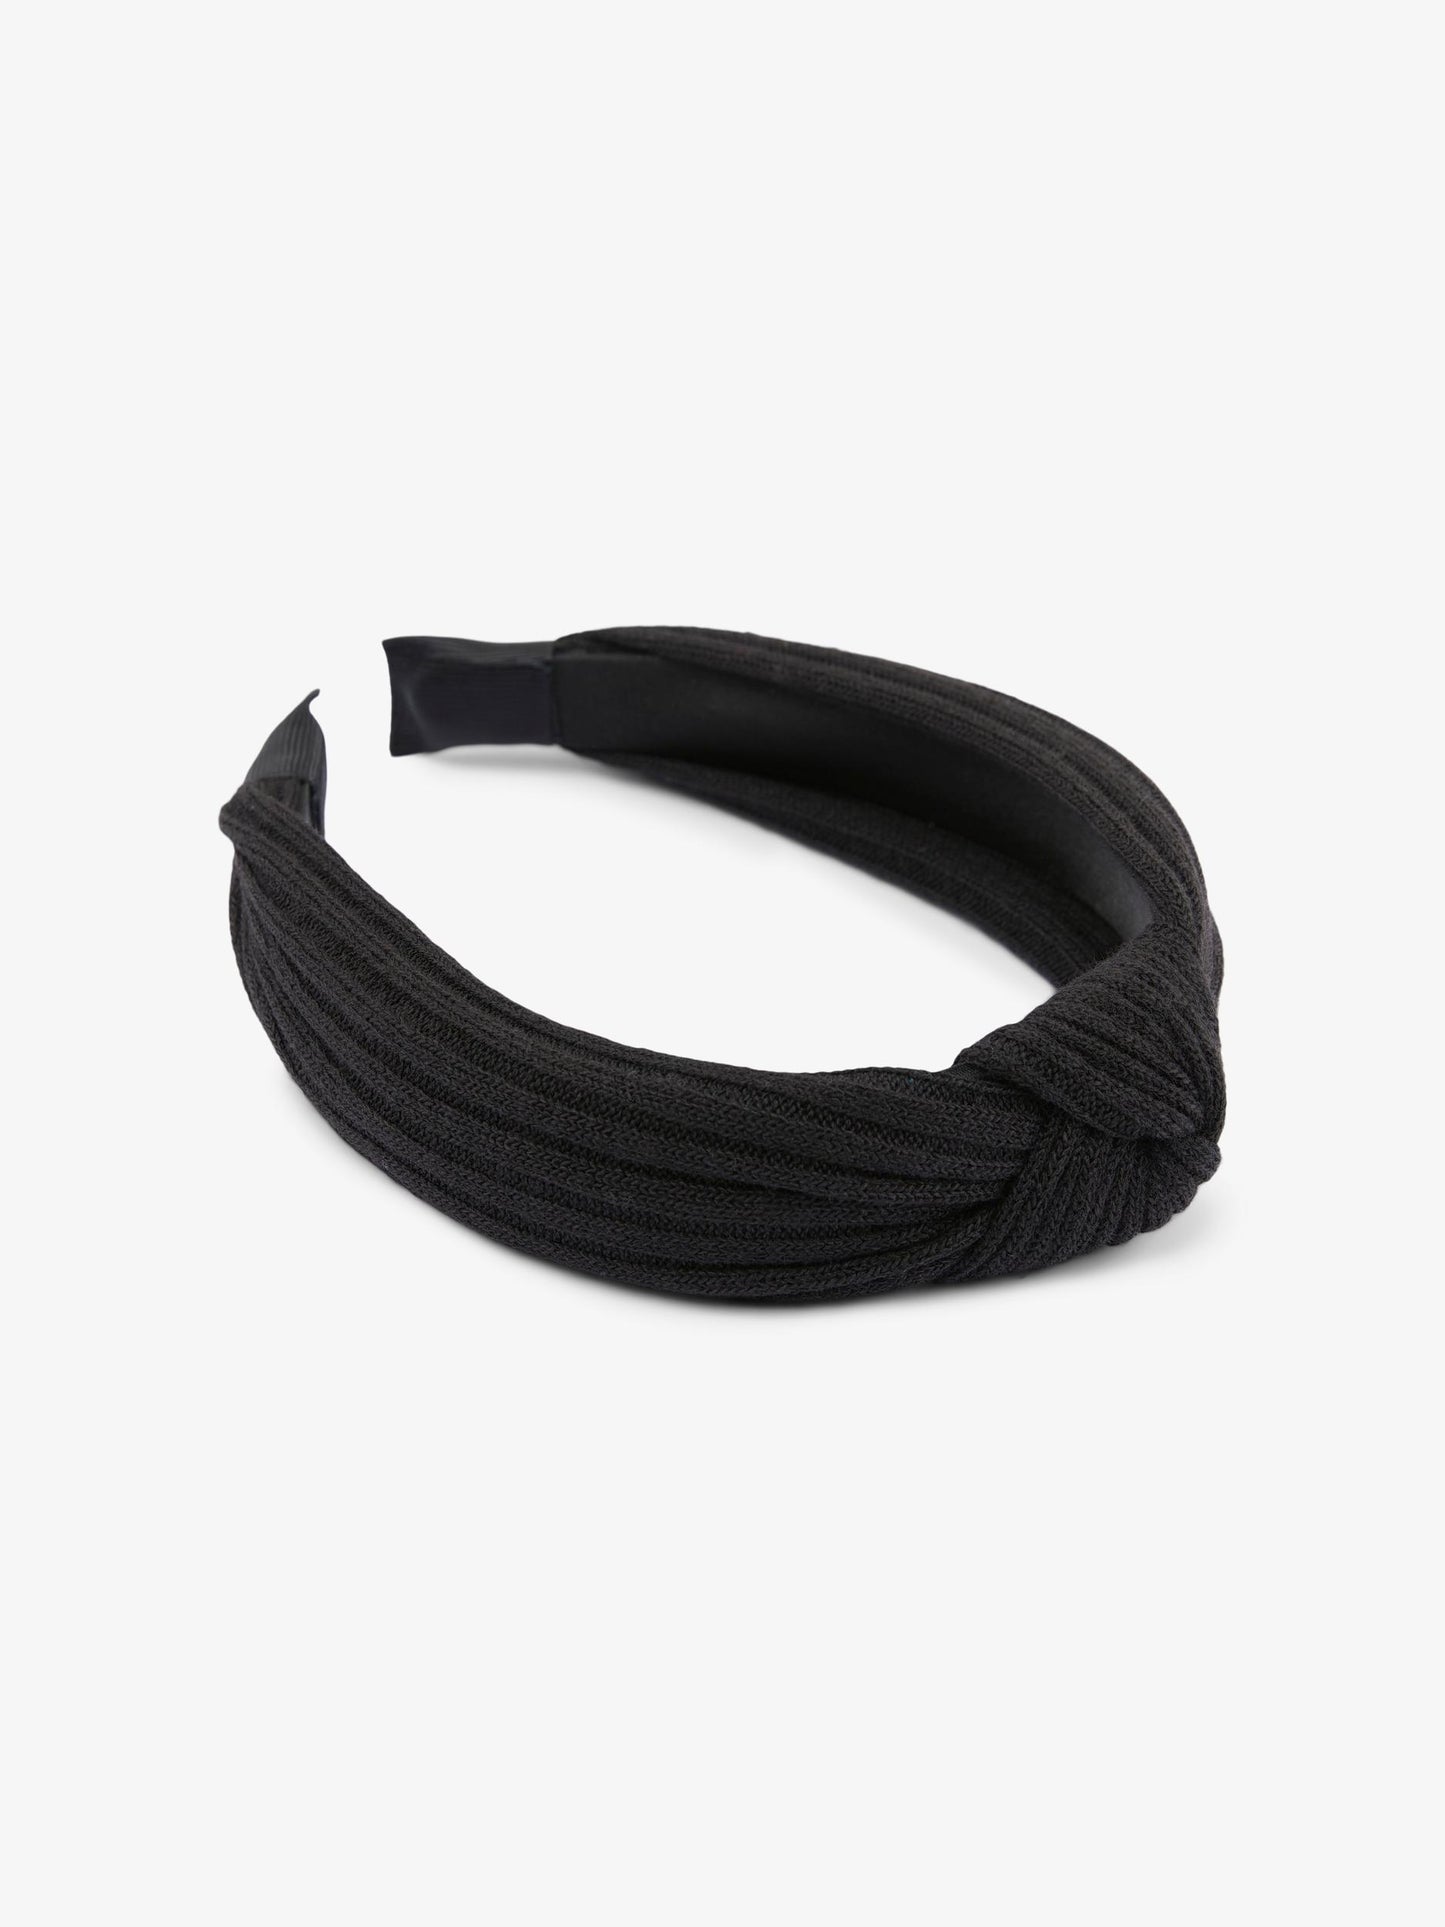 Kana Headband - Black